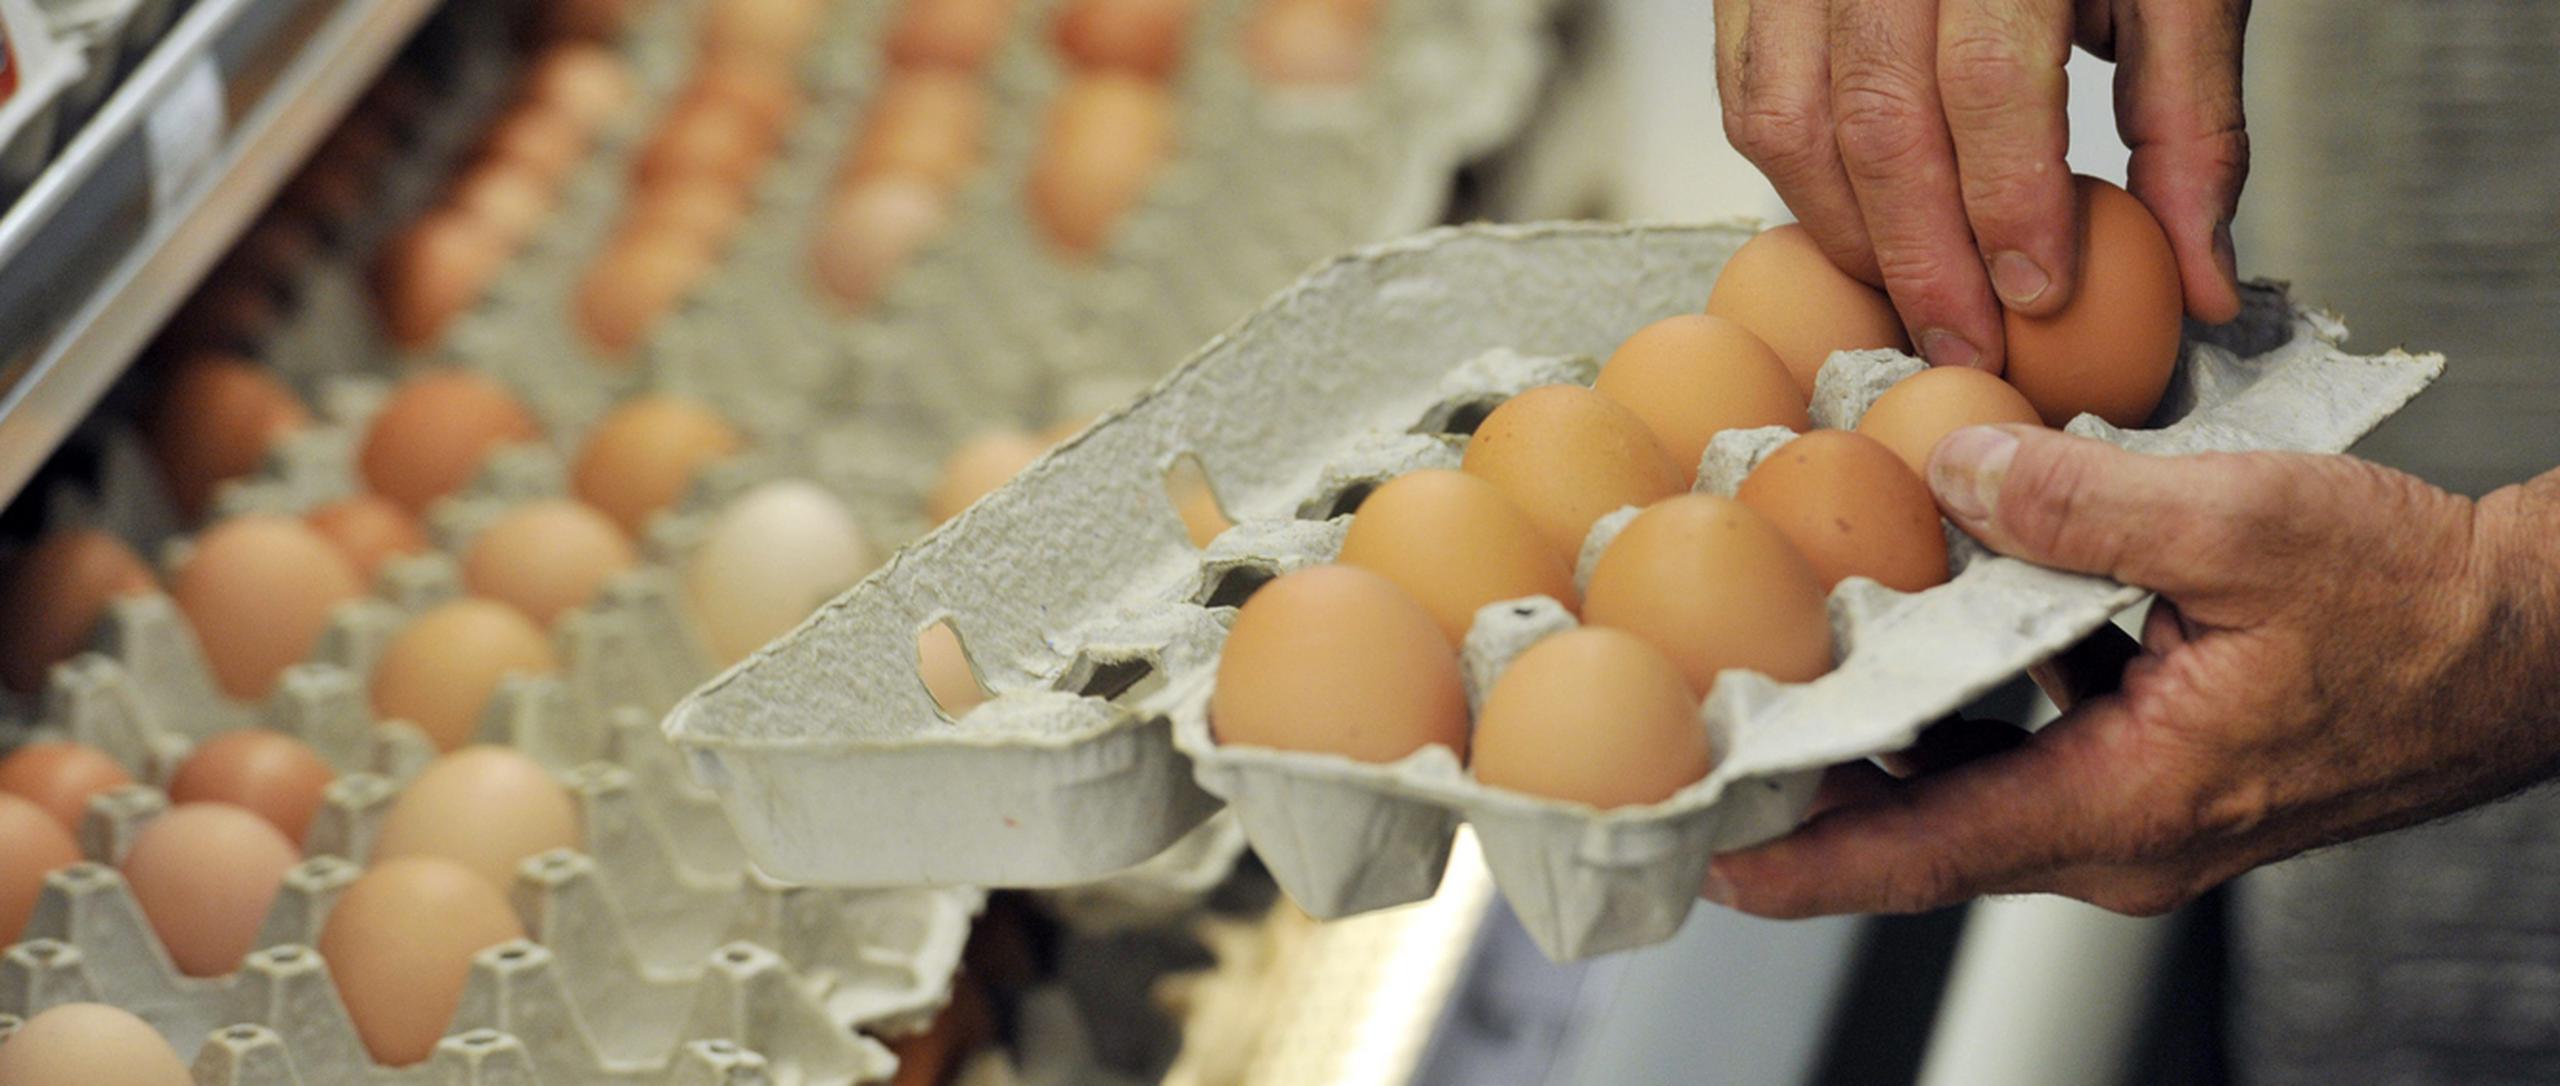 Las hueveras: el gran enemigo de los huevos, las neveras y la seguridad  alimentaria en casa – OxoCarbenio – Divulgación científica